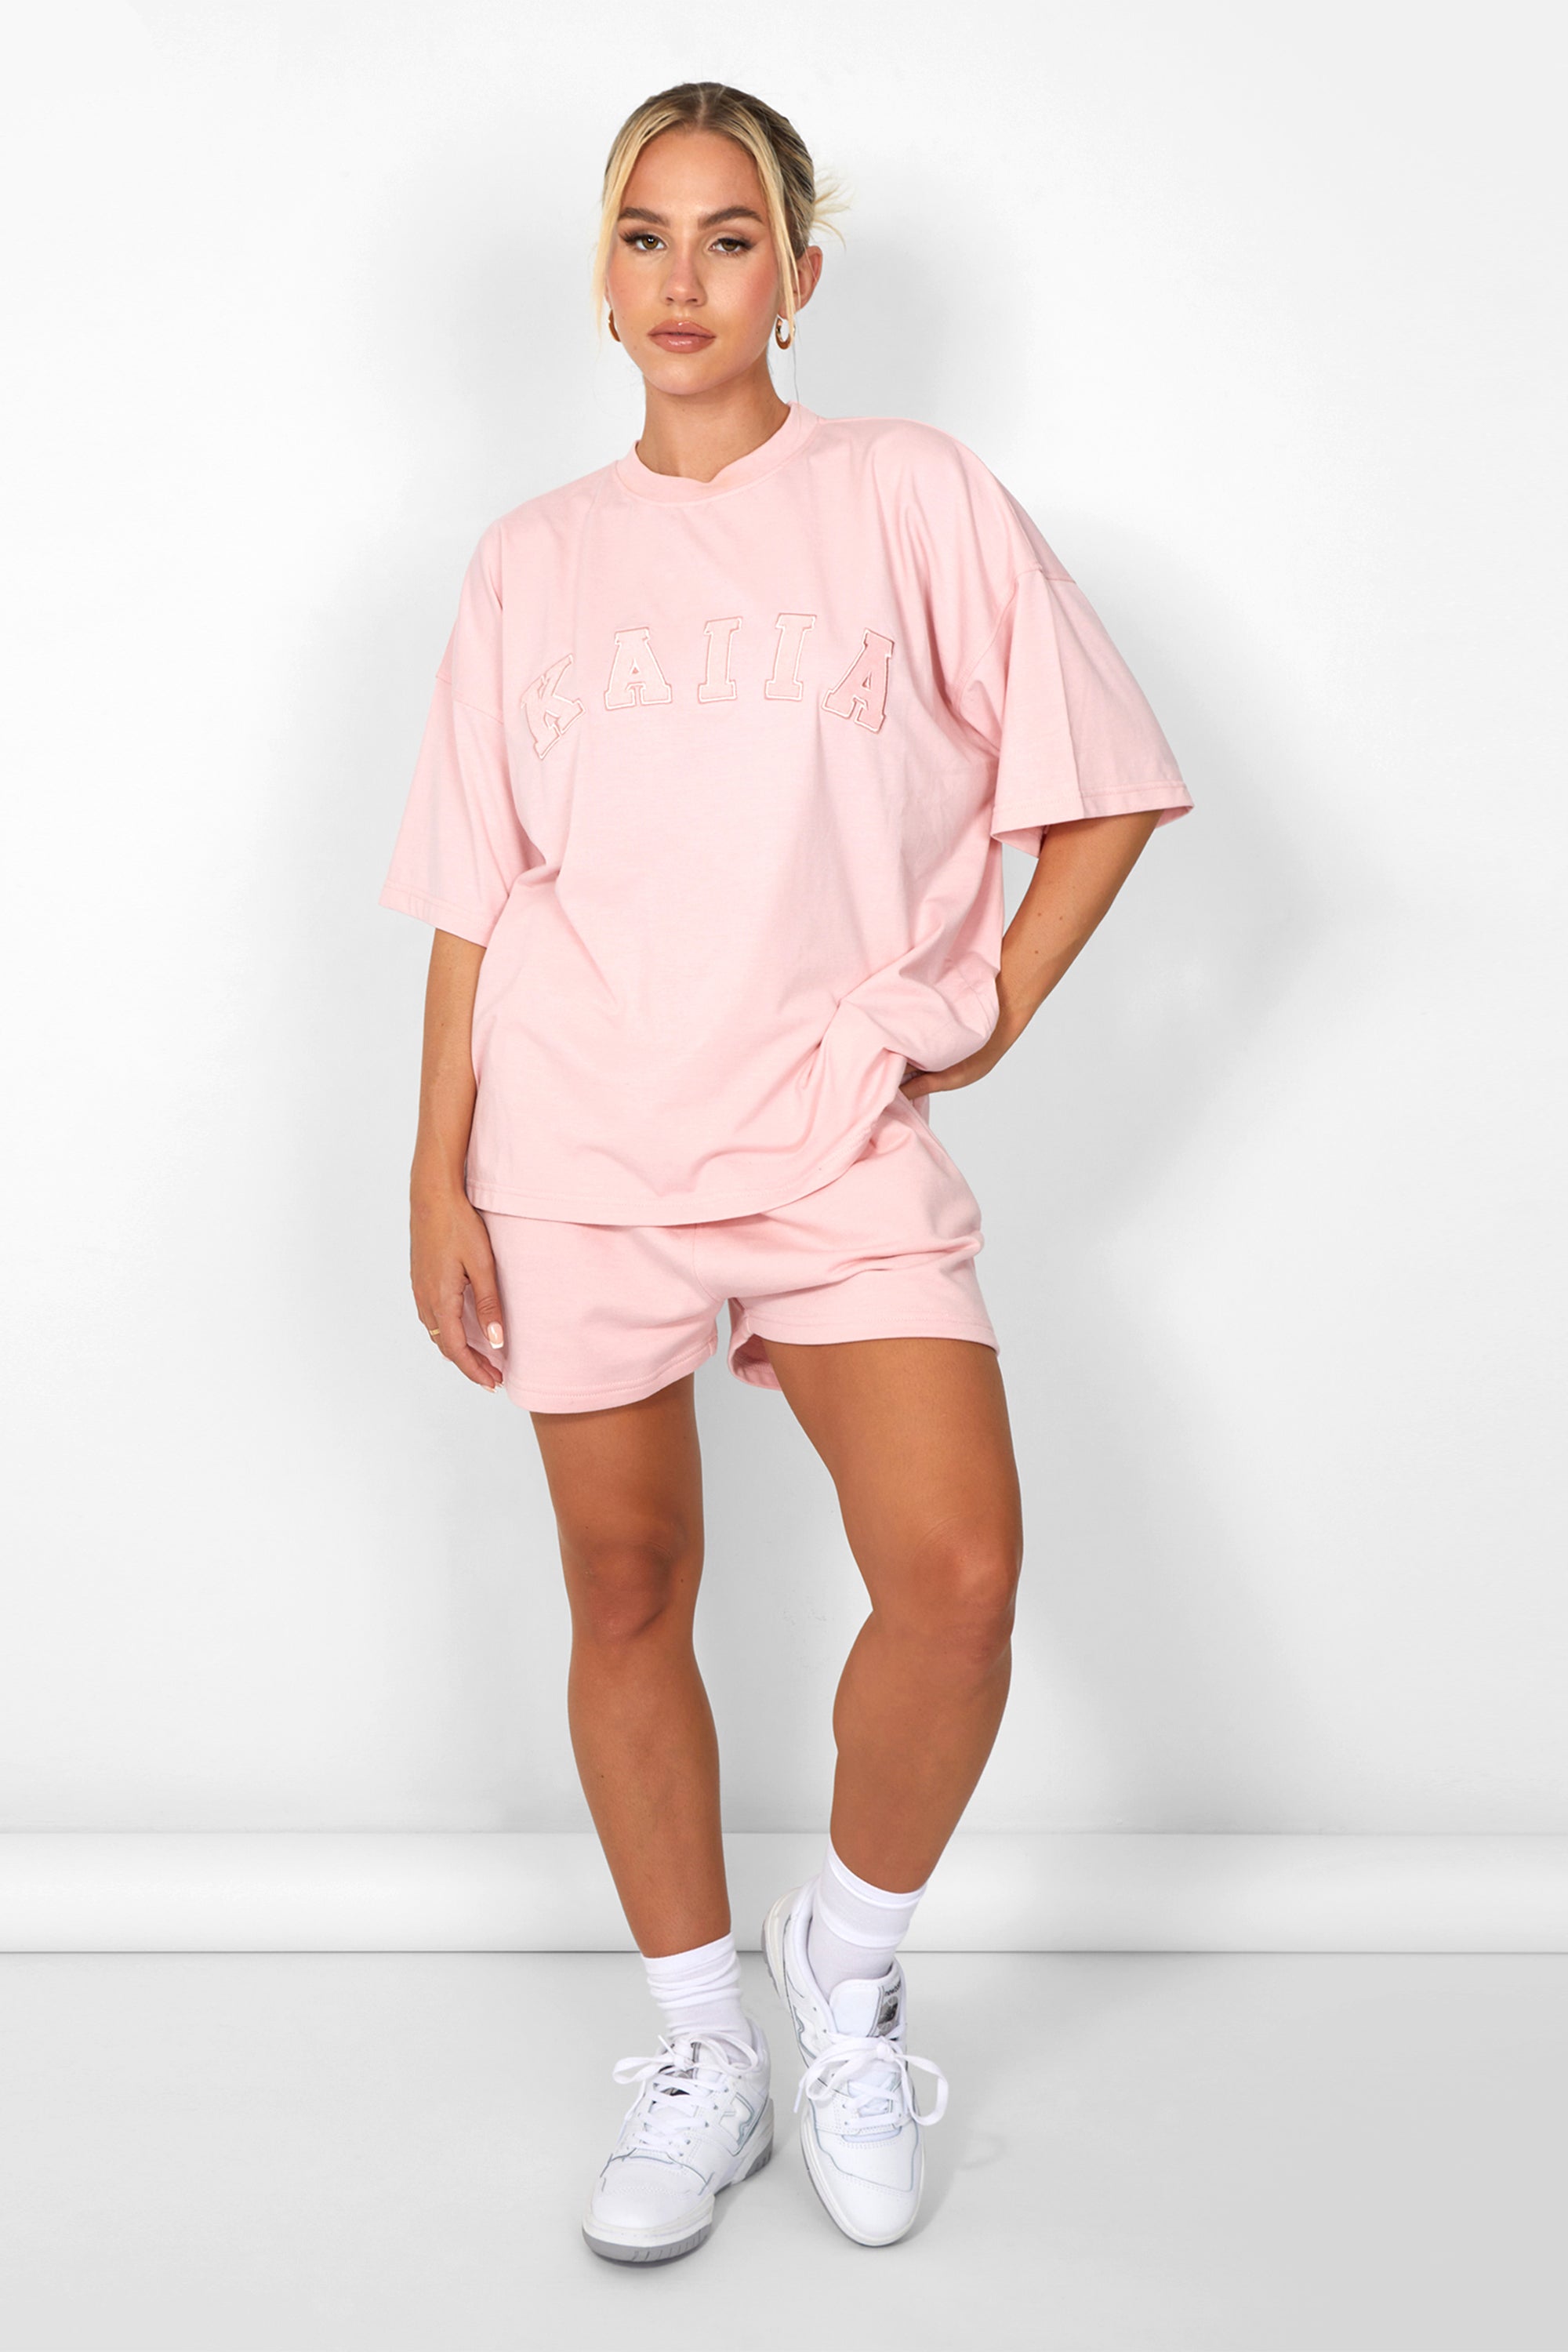 Kaiia Oversized T-shirt Soft Pink UK 20 product